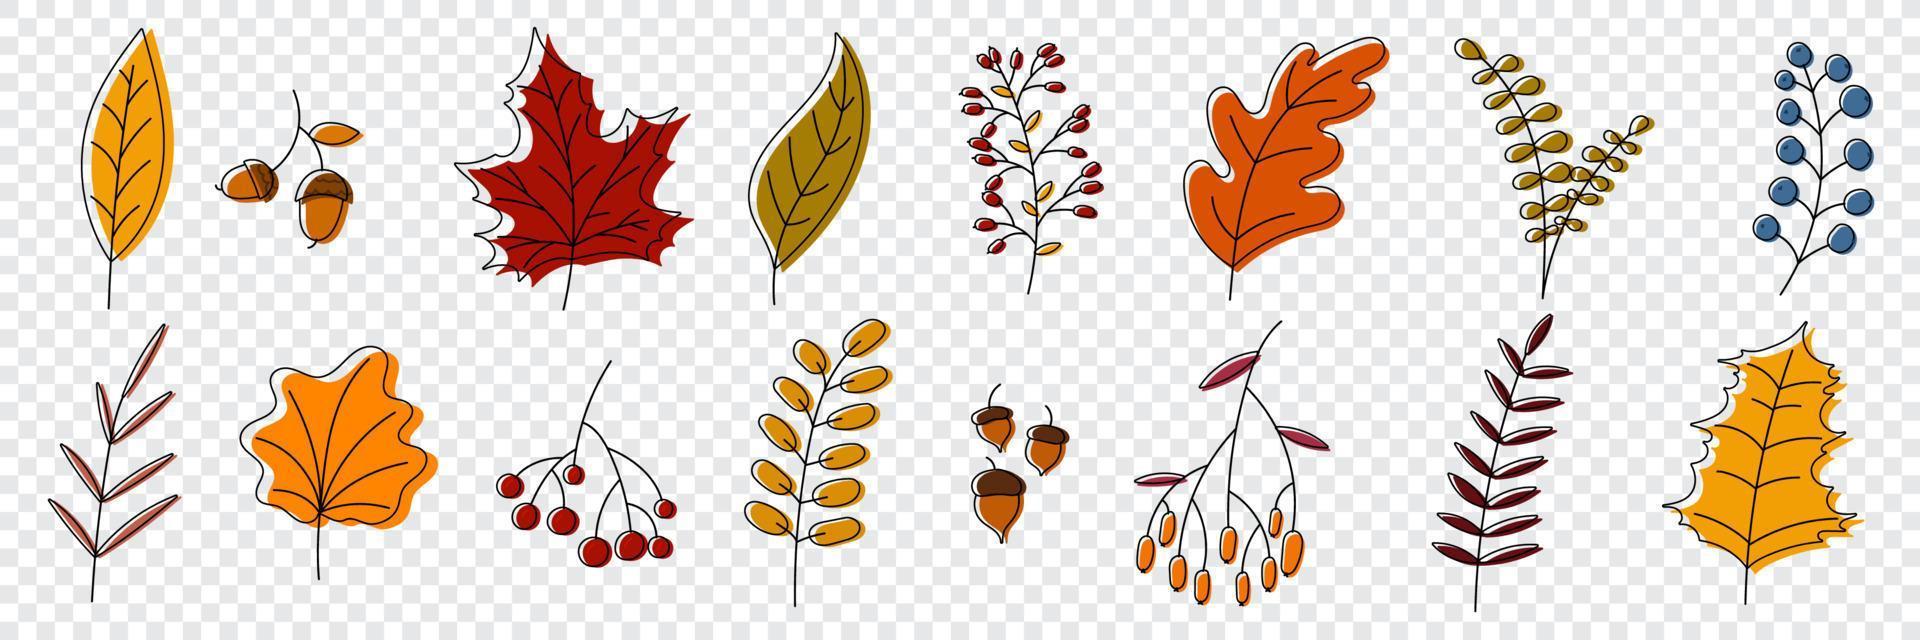 colección de otoño dibujada a mano con plantas y hojas de temporada. conjunto de plantas dibujadas a mano, hojas, flores. colorido de elementos naturales para fondos estacionales. ilustración vectorial vector